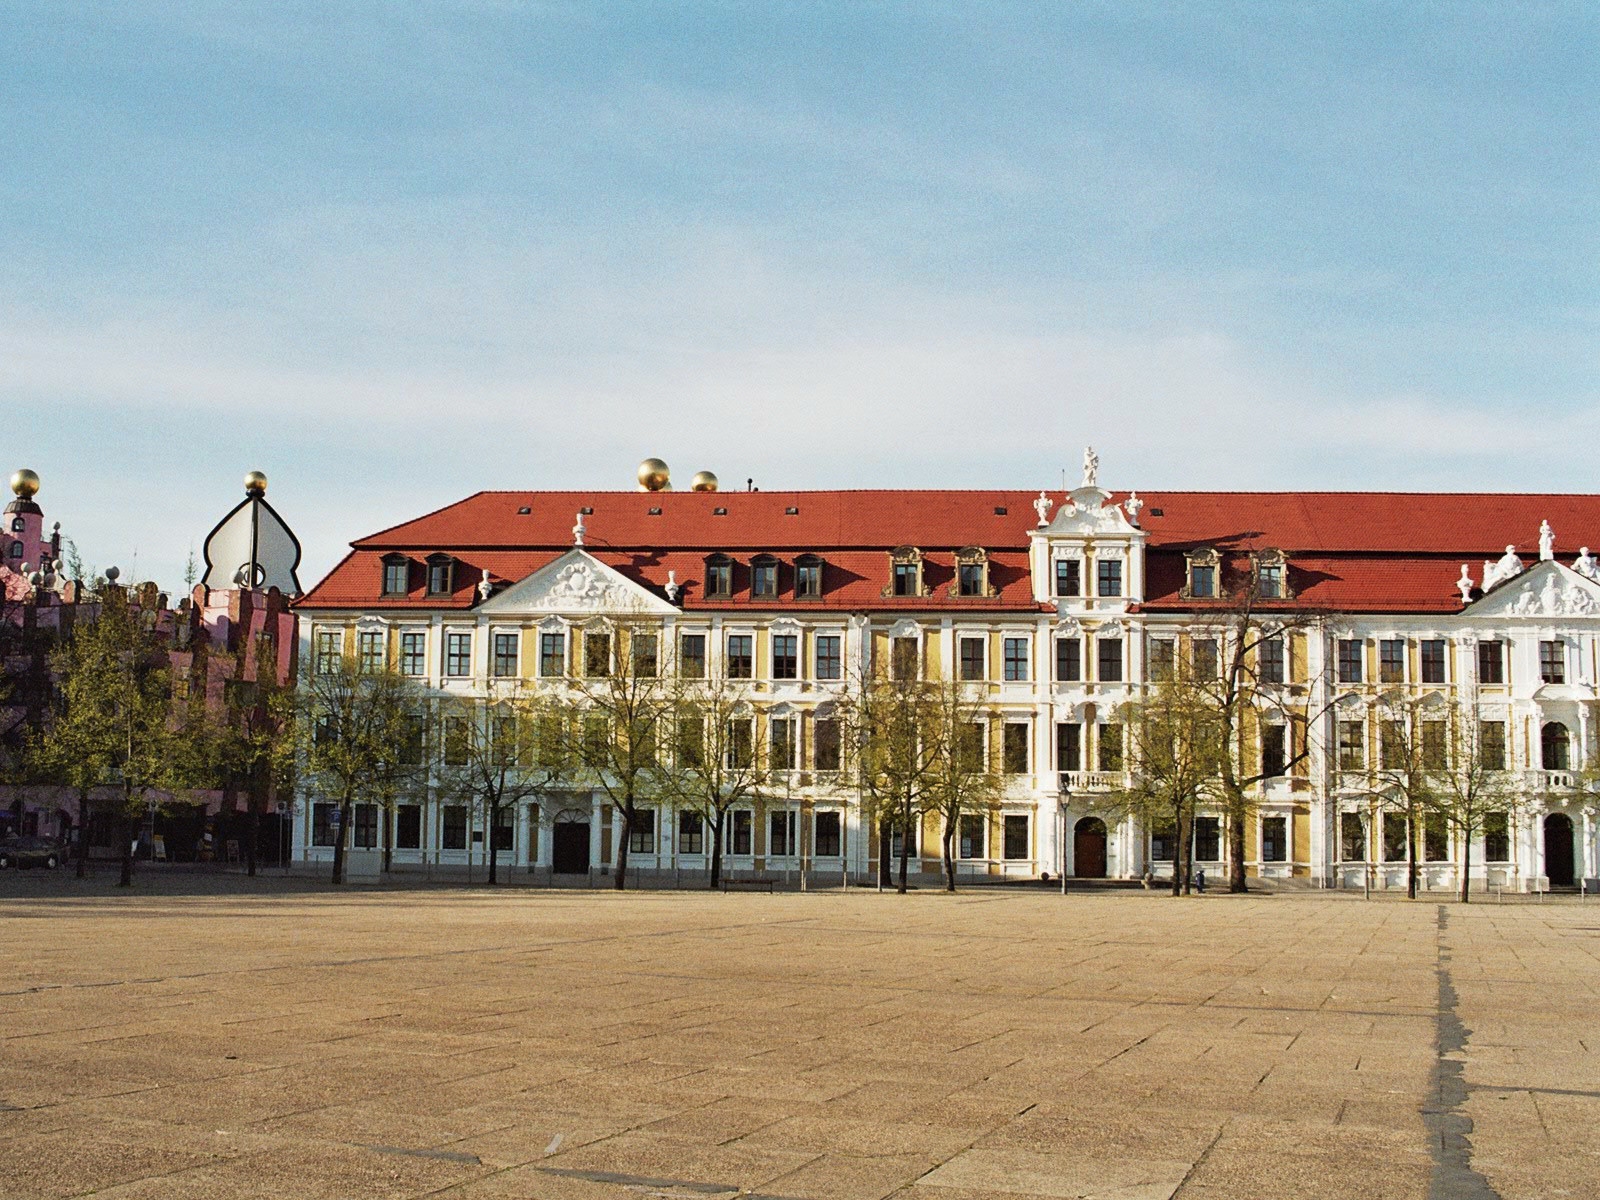 Magdeburg Landtag